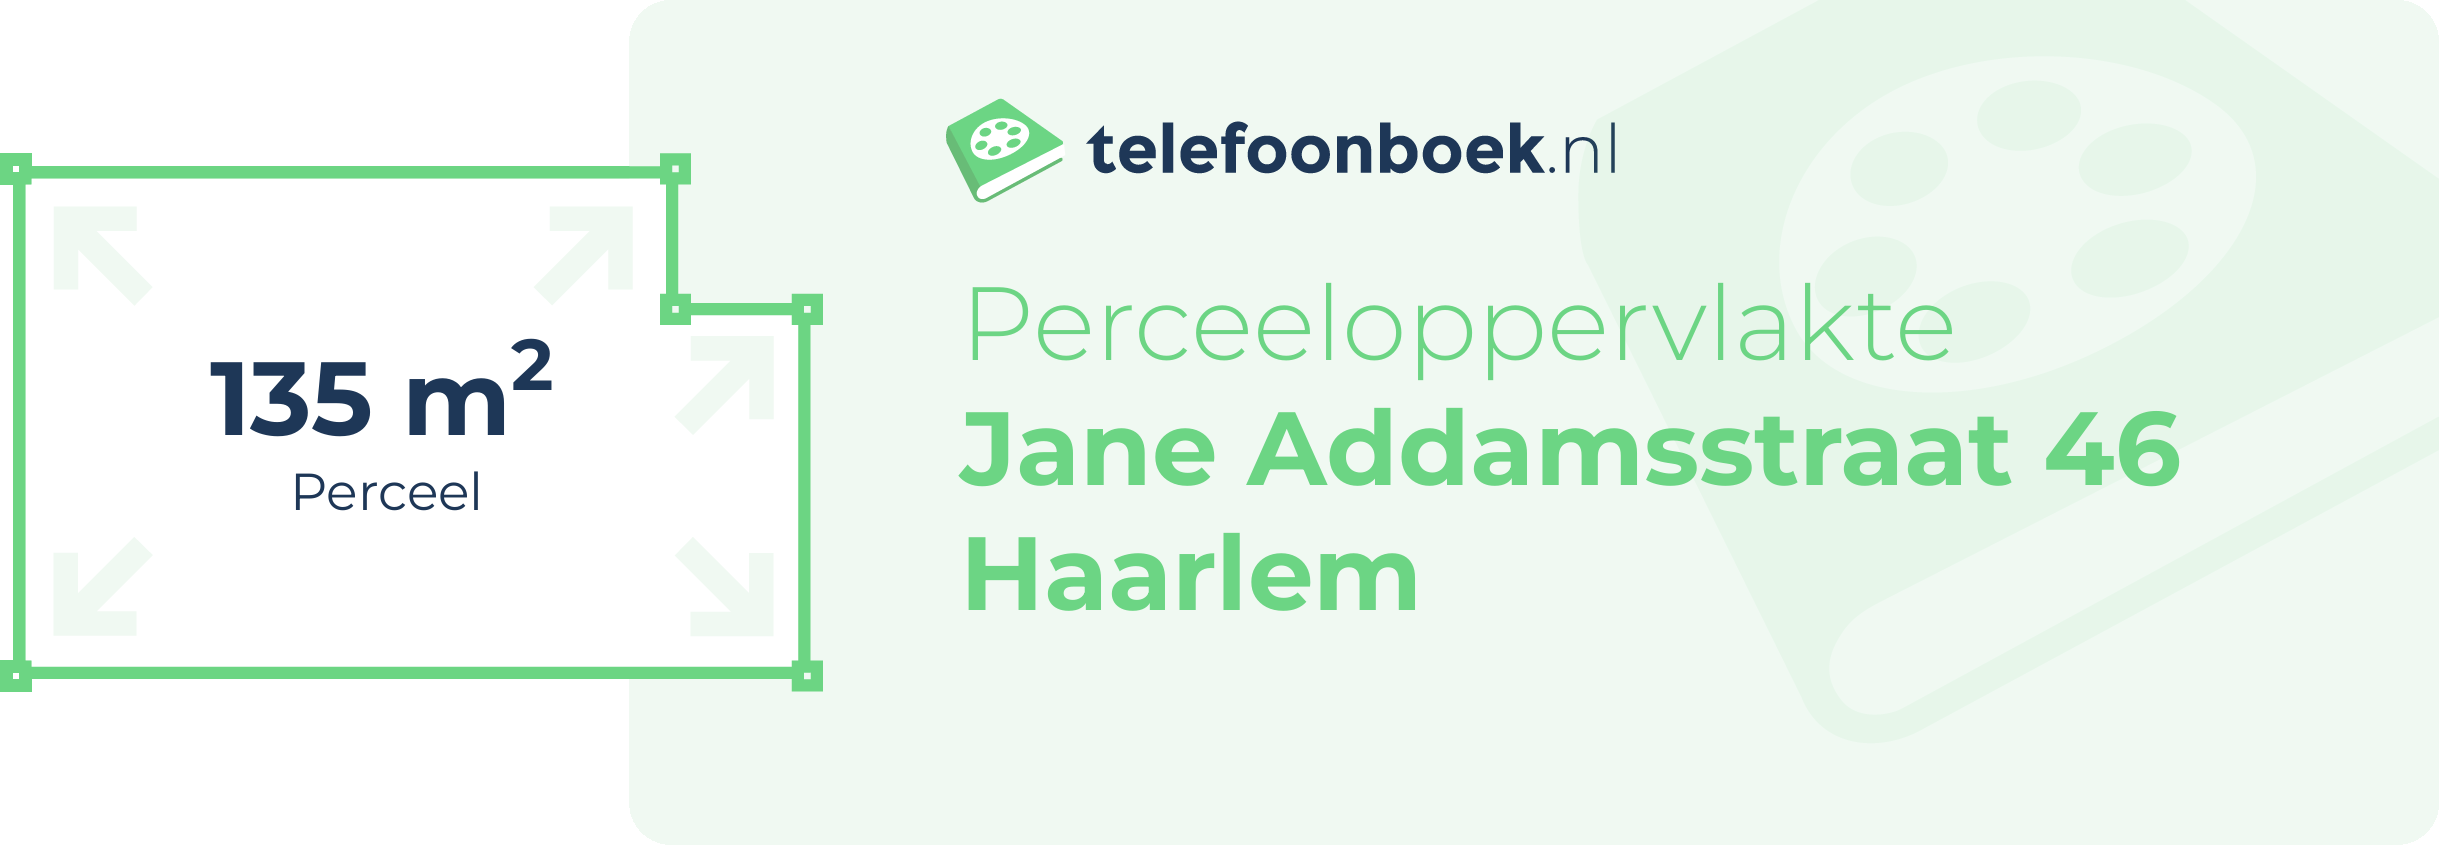 Perceeloppervlakte Jane Addamsstraat 46 Haarlem